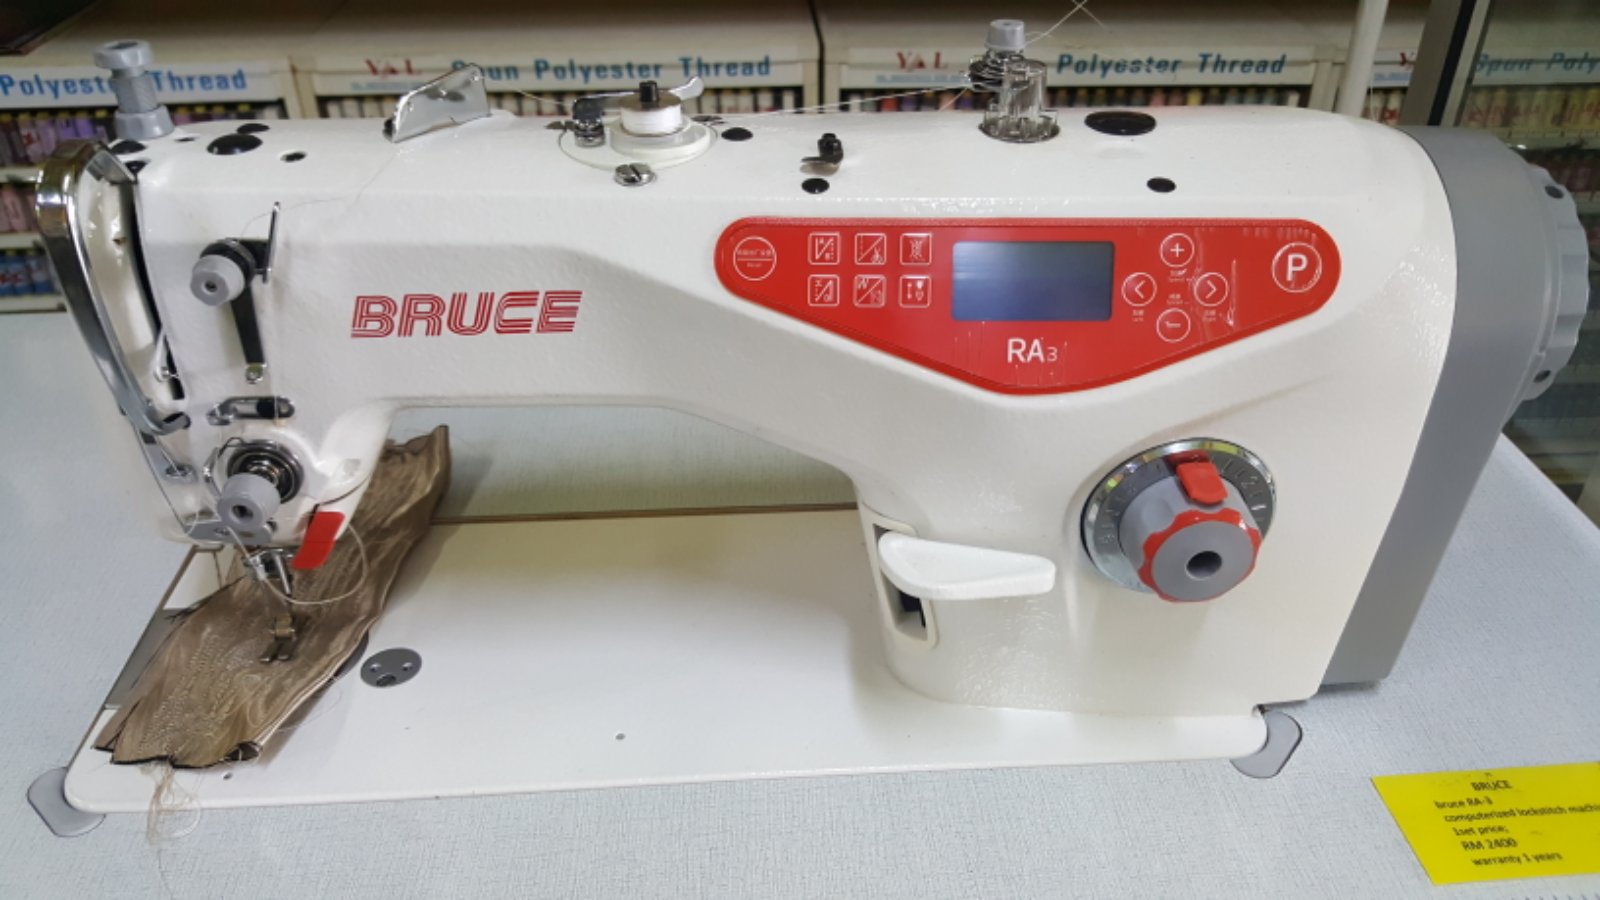 New Bruce Super Hi Speed Sewing Machine